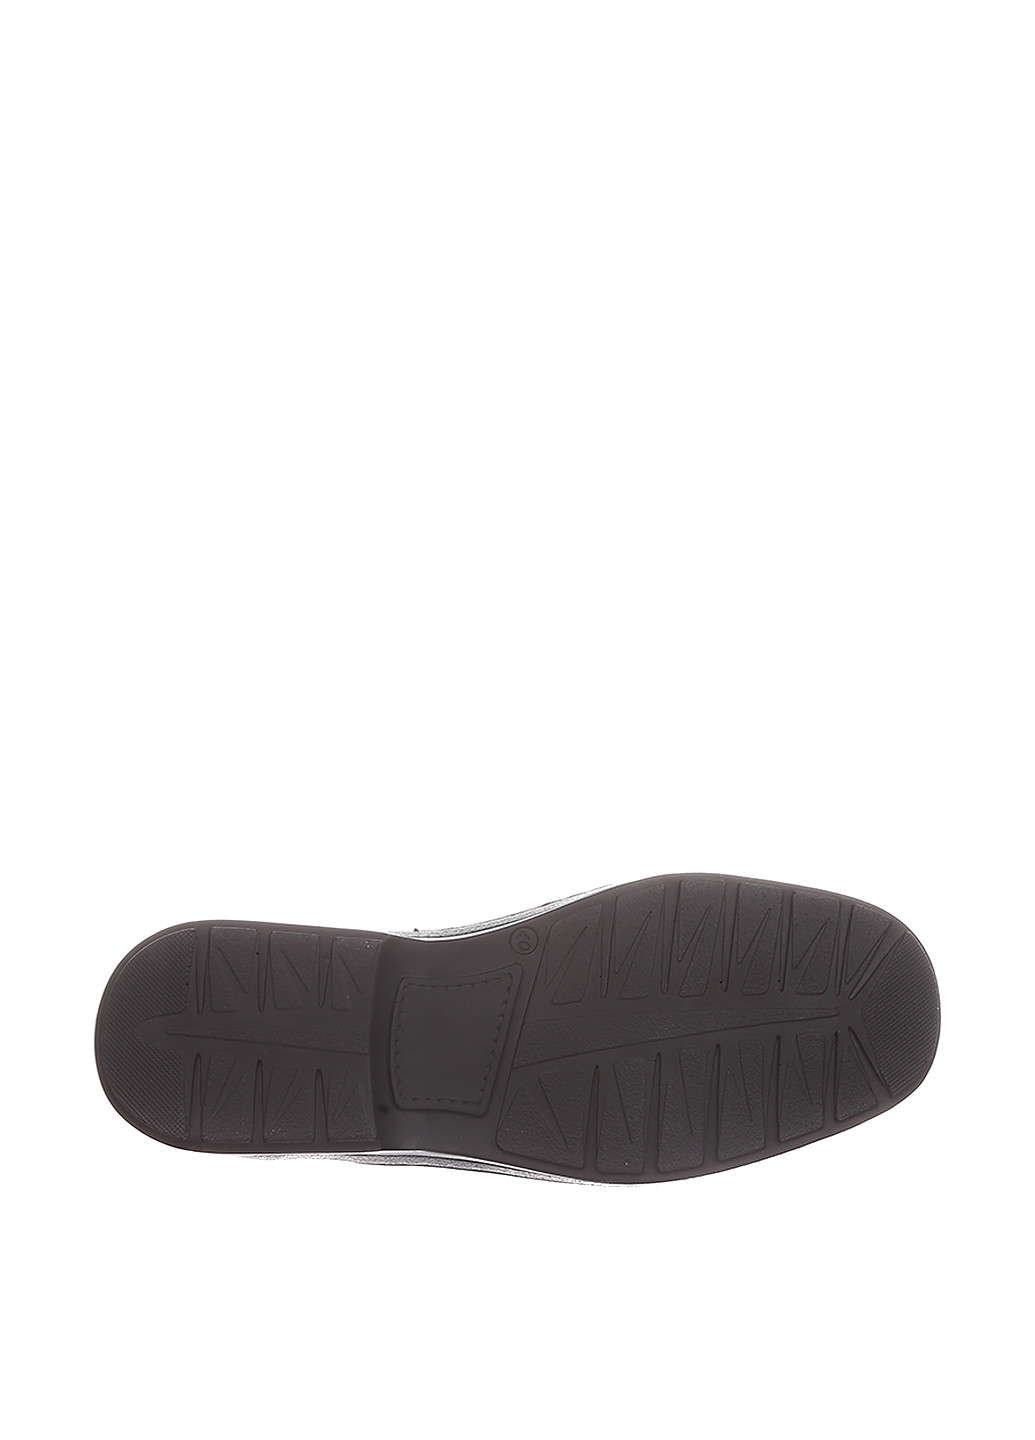 Черные классические туфли Cliford на резинке